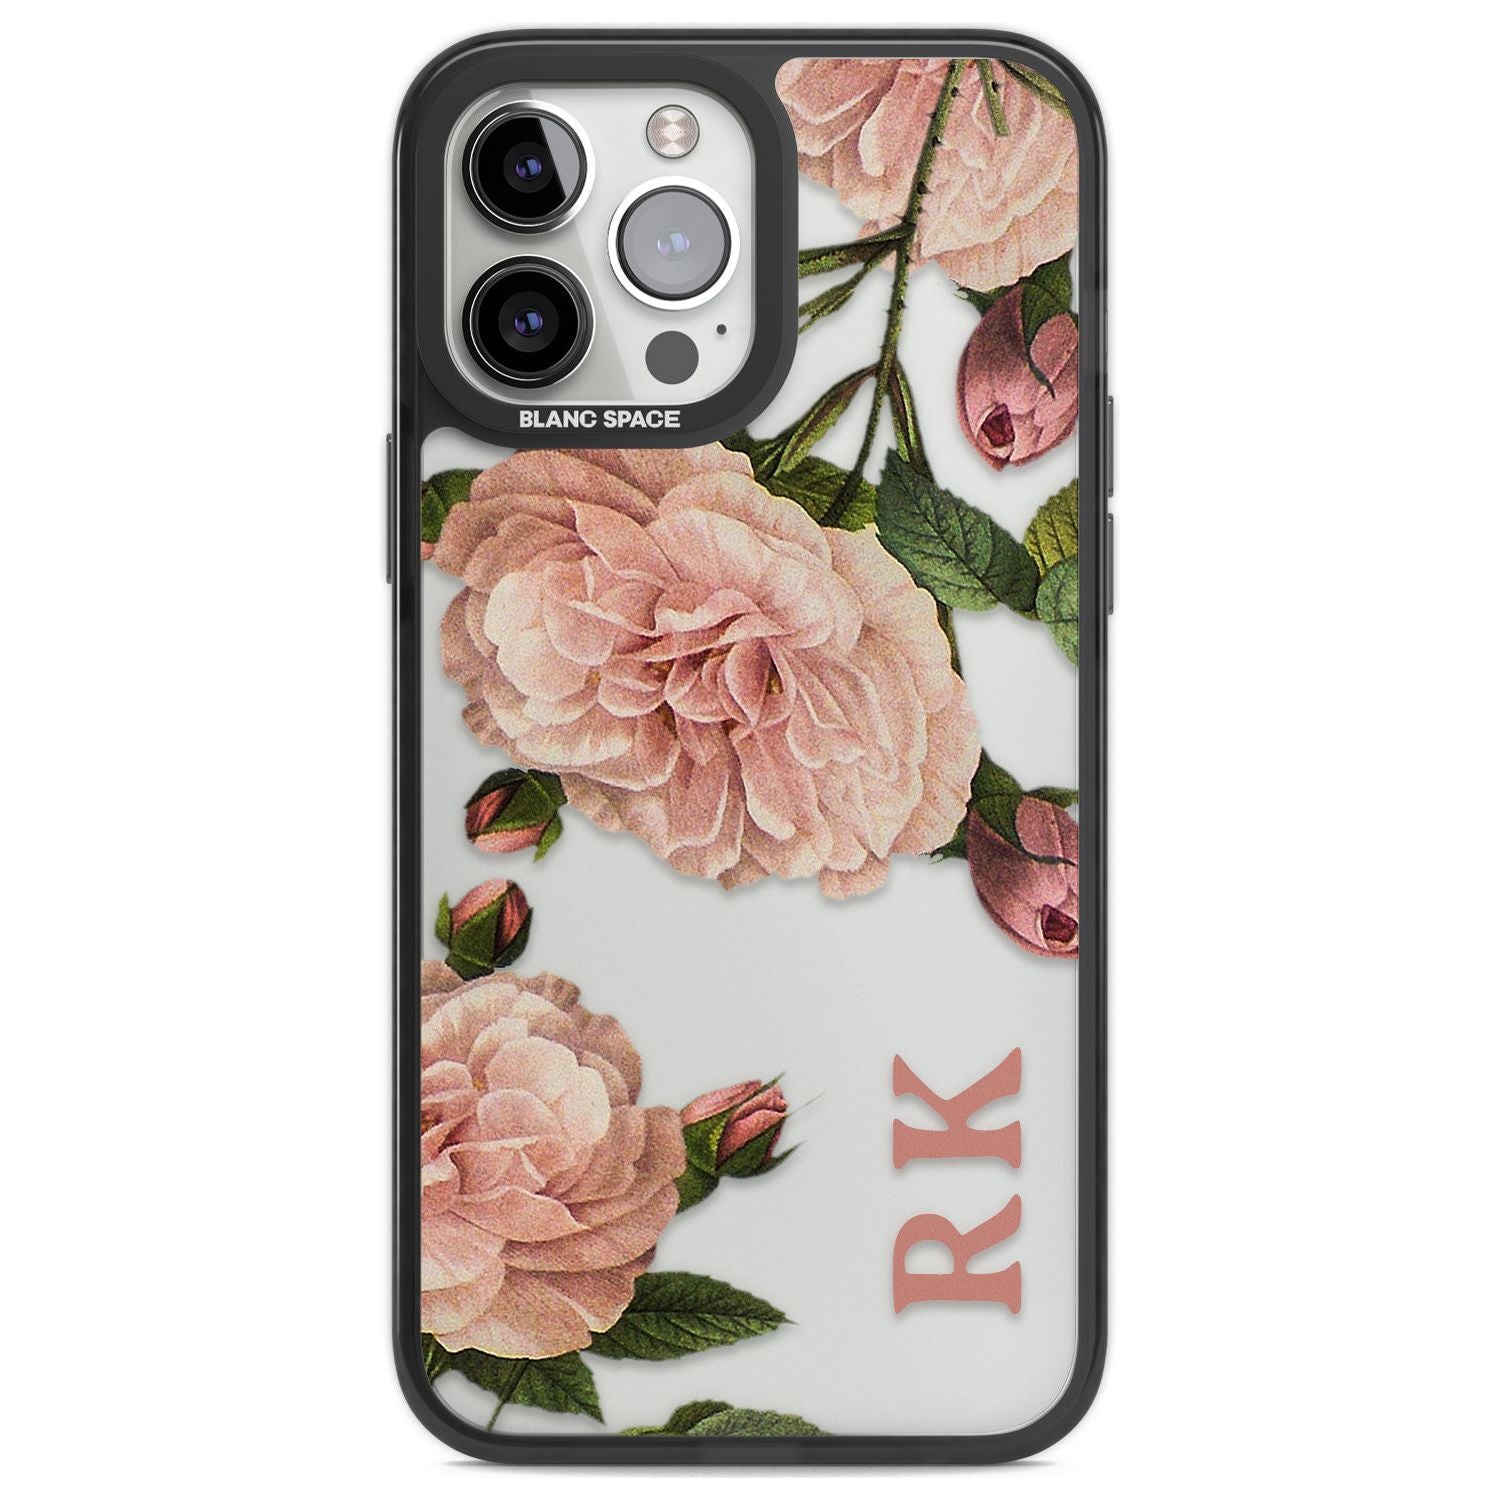 Personalised Clear Vintage Floral Pale Pink Peonies Custom Phone Case iPhone 13 Pro Max / Black Impact Case,iPhone 14 Pro Max / Black Impact Case Blanc Space